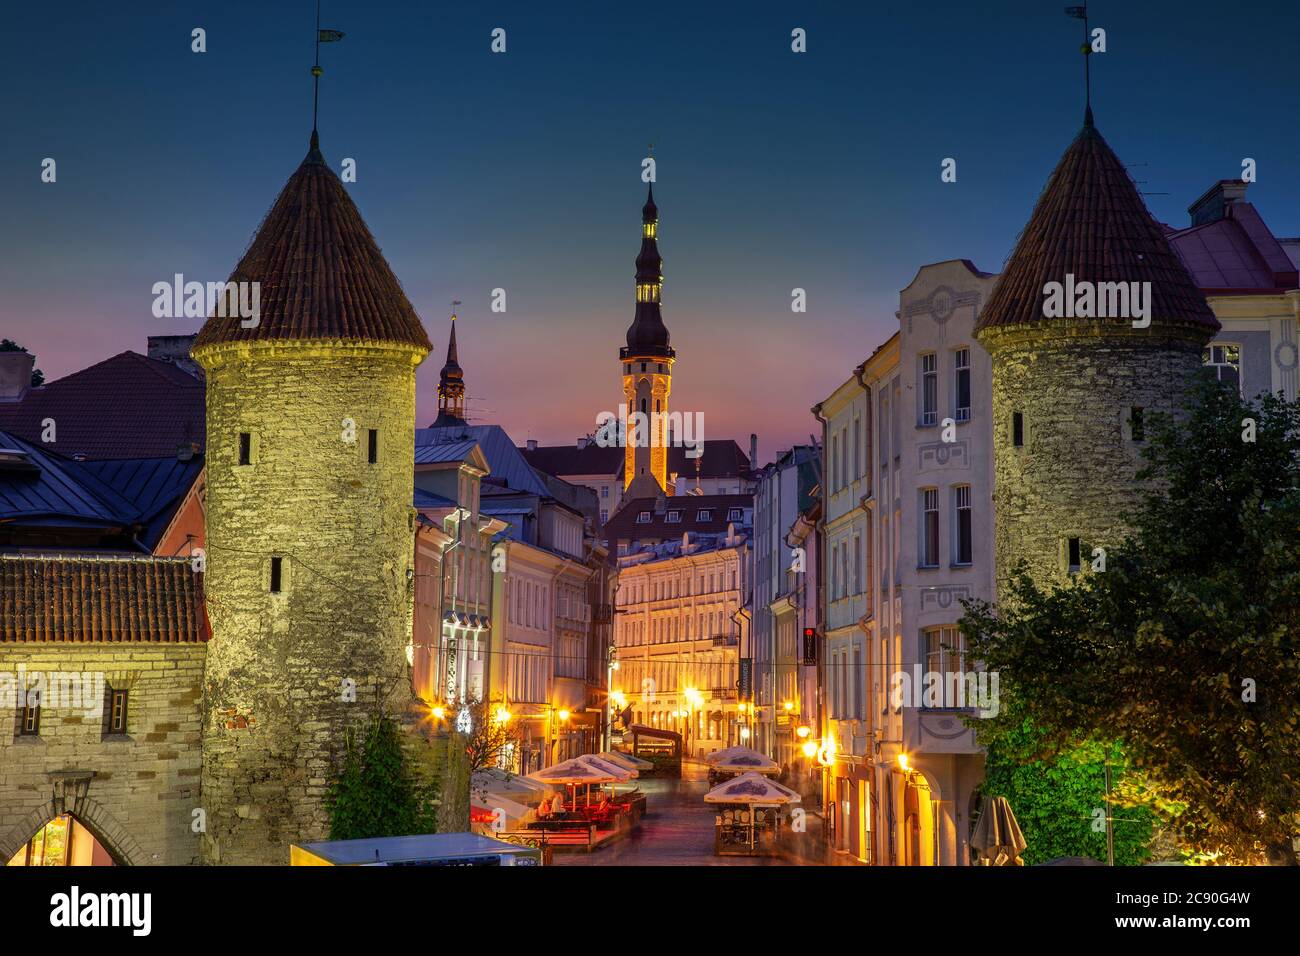 Europe, Baltic States, Estonia, Tallinn, Old town architecture at night Stock Photo